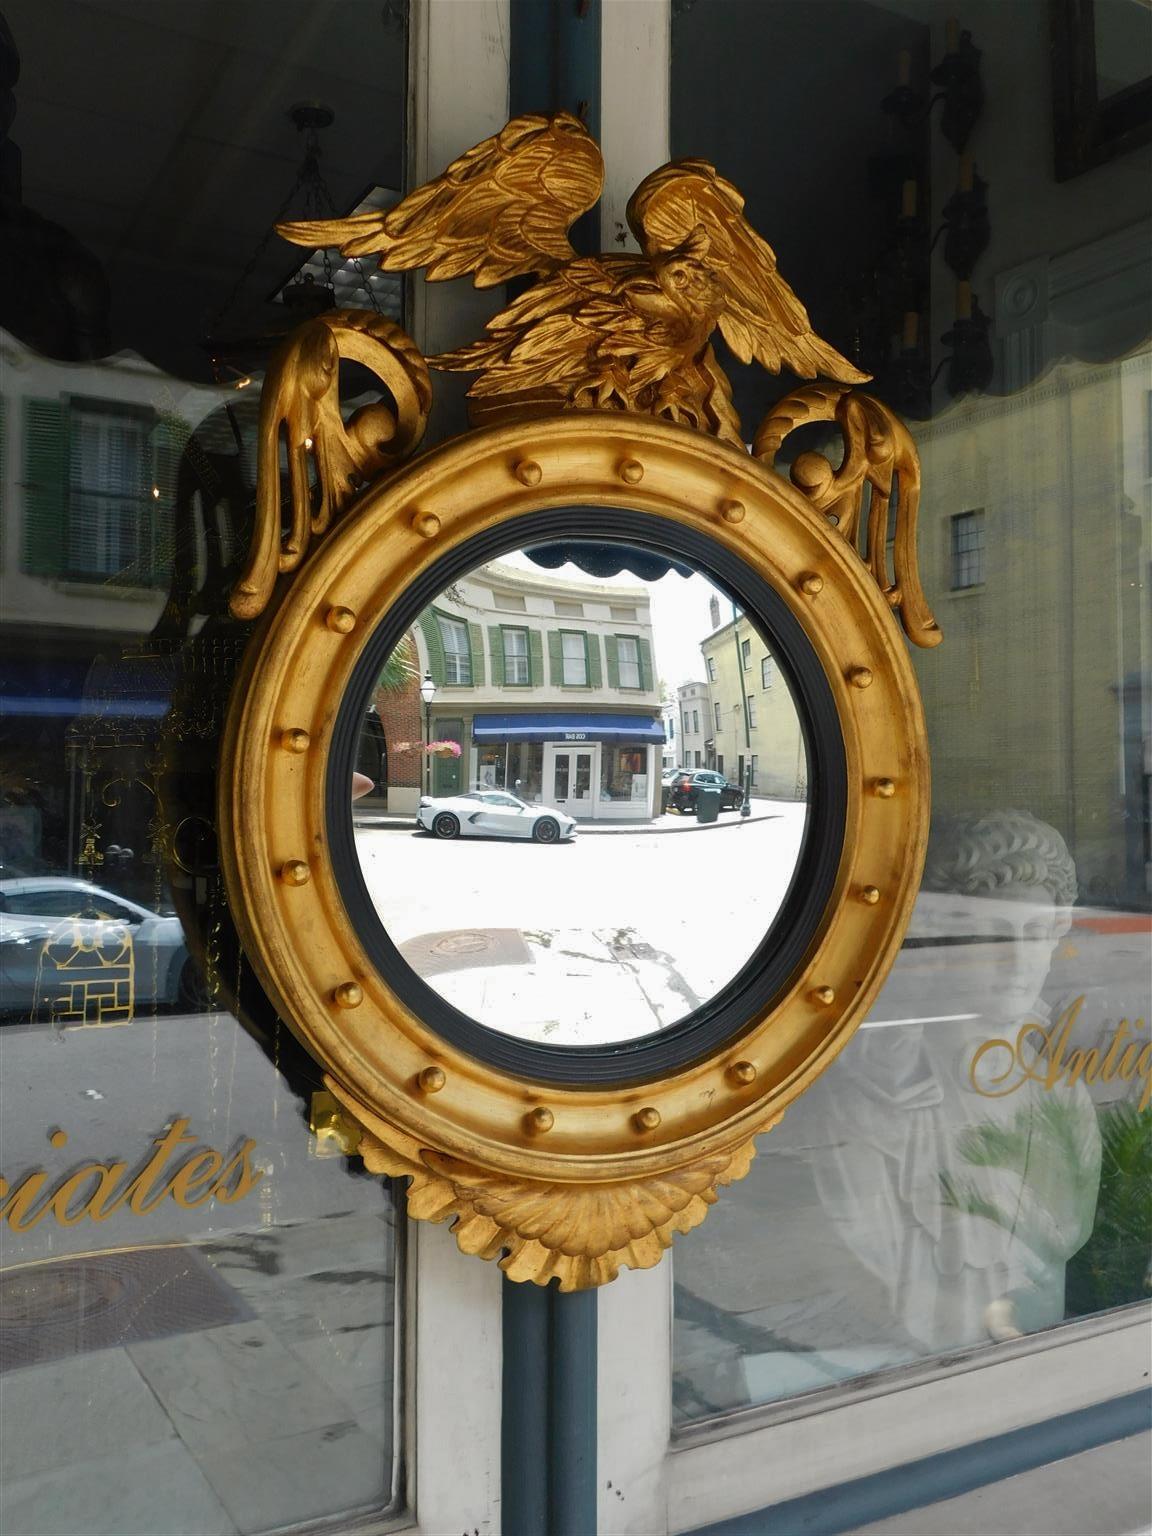 Miroir convexe en bois sculpté et gesso, de style fédéral américain, avec un aigle perché sur le flanc, un feuillage d'acanthes, des sphères circulaires à l'intérieur, un anneau à cannelures ébonisé, et un pendentif floral entrelacé décoratif. Le